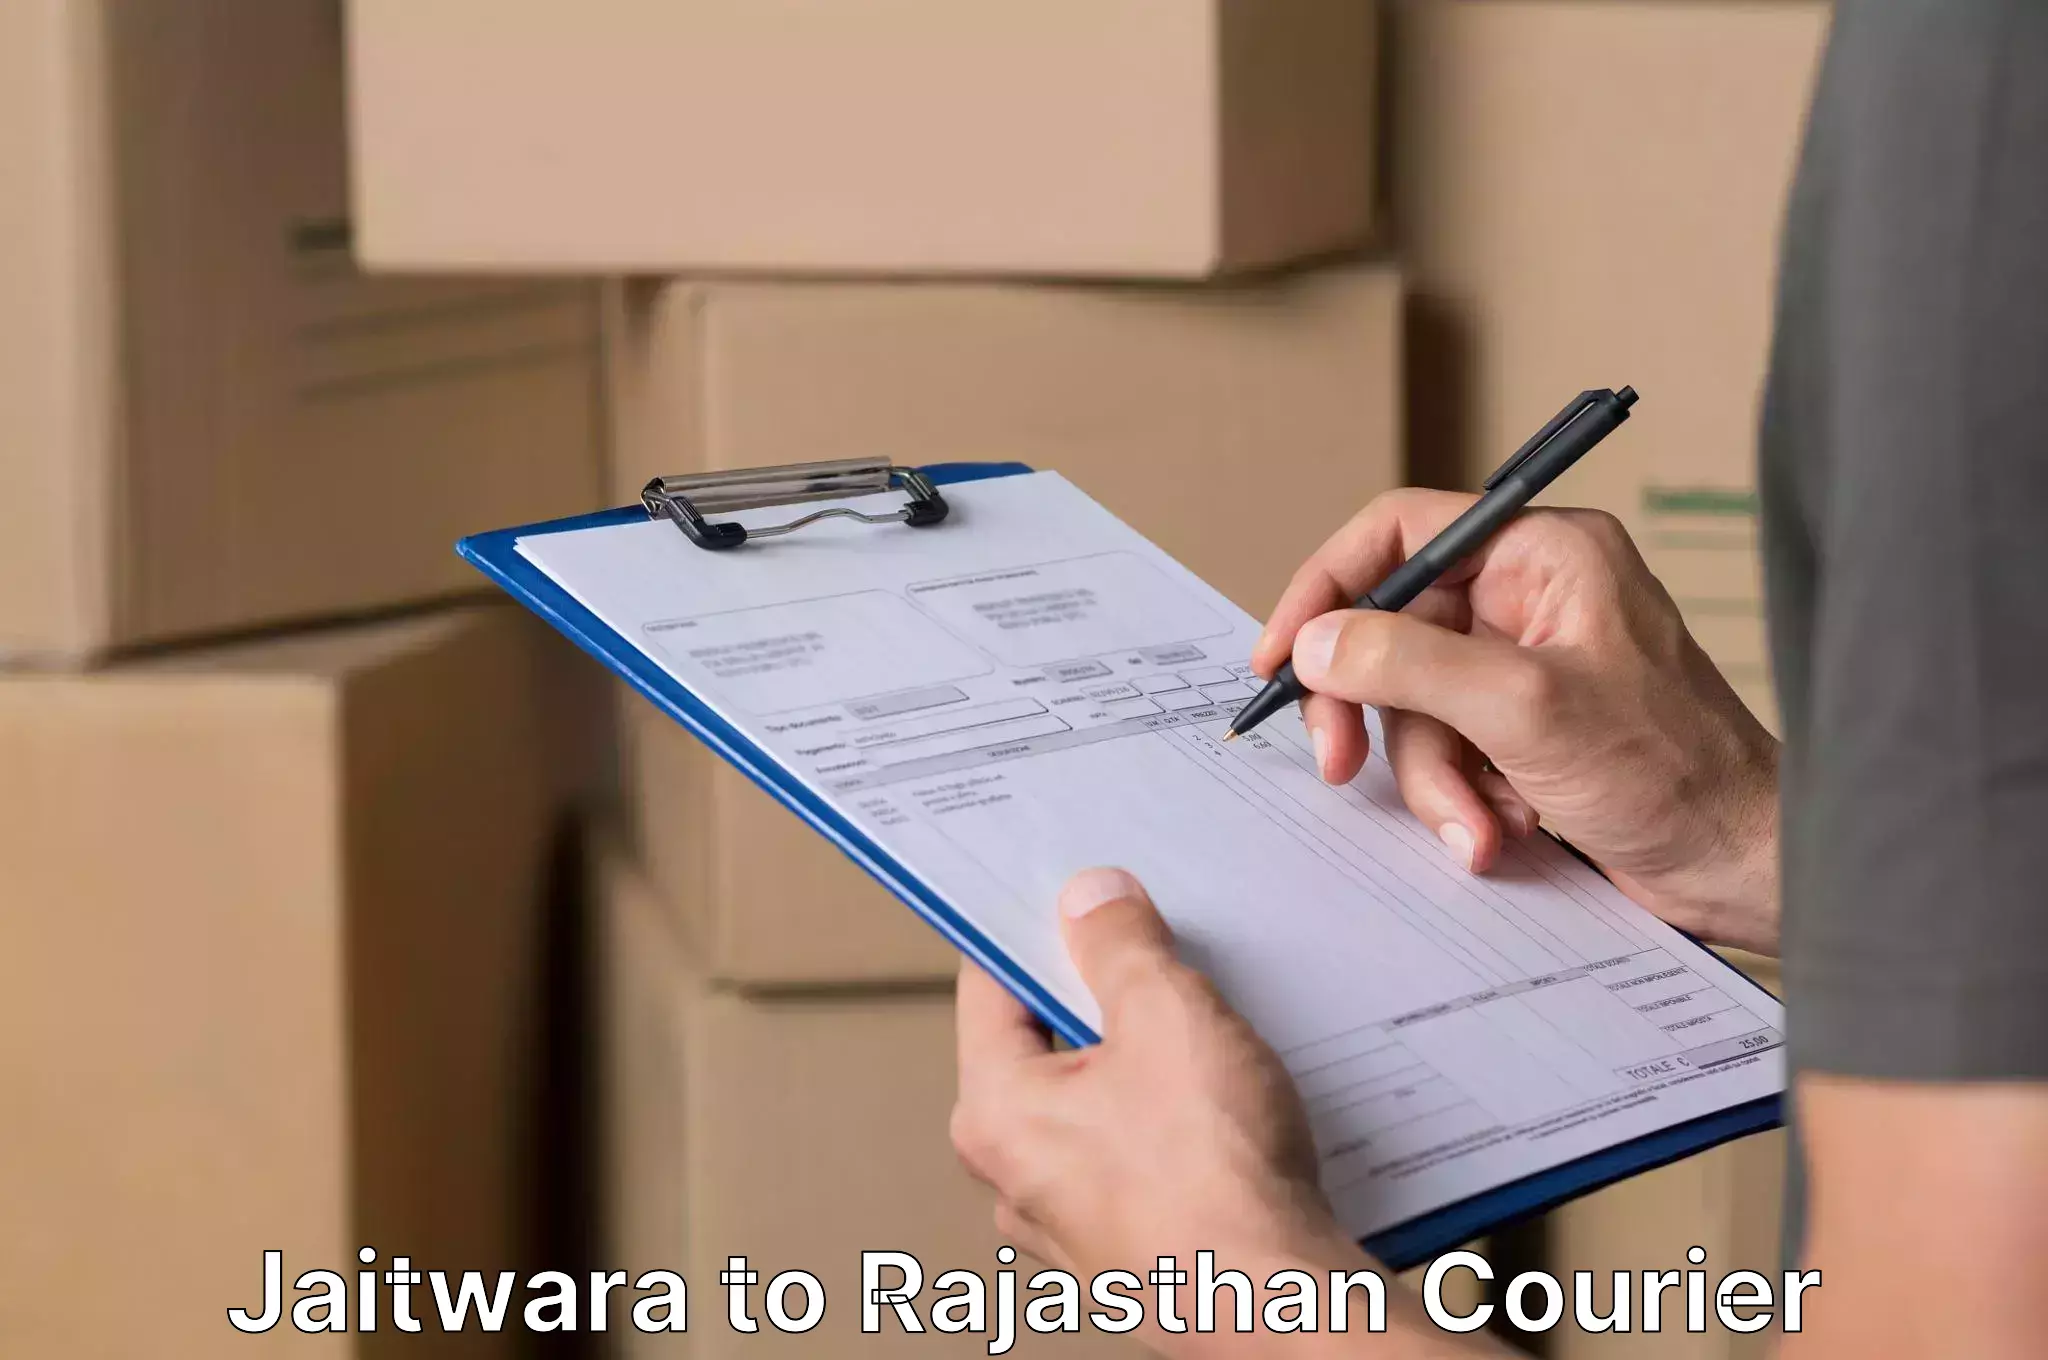 Furniture moving assistance Jaitwara to Rajasthan